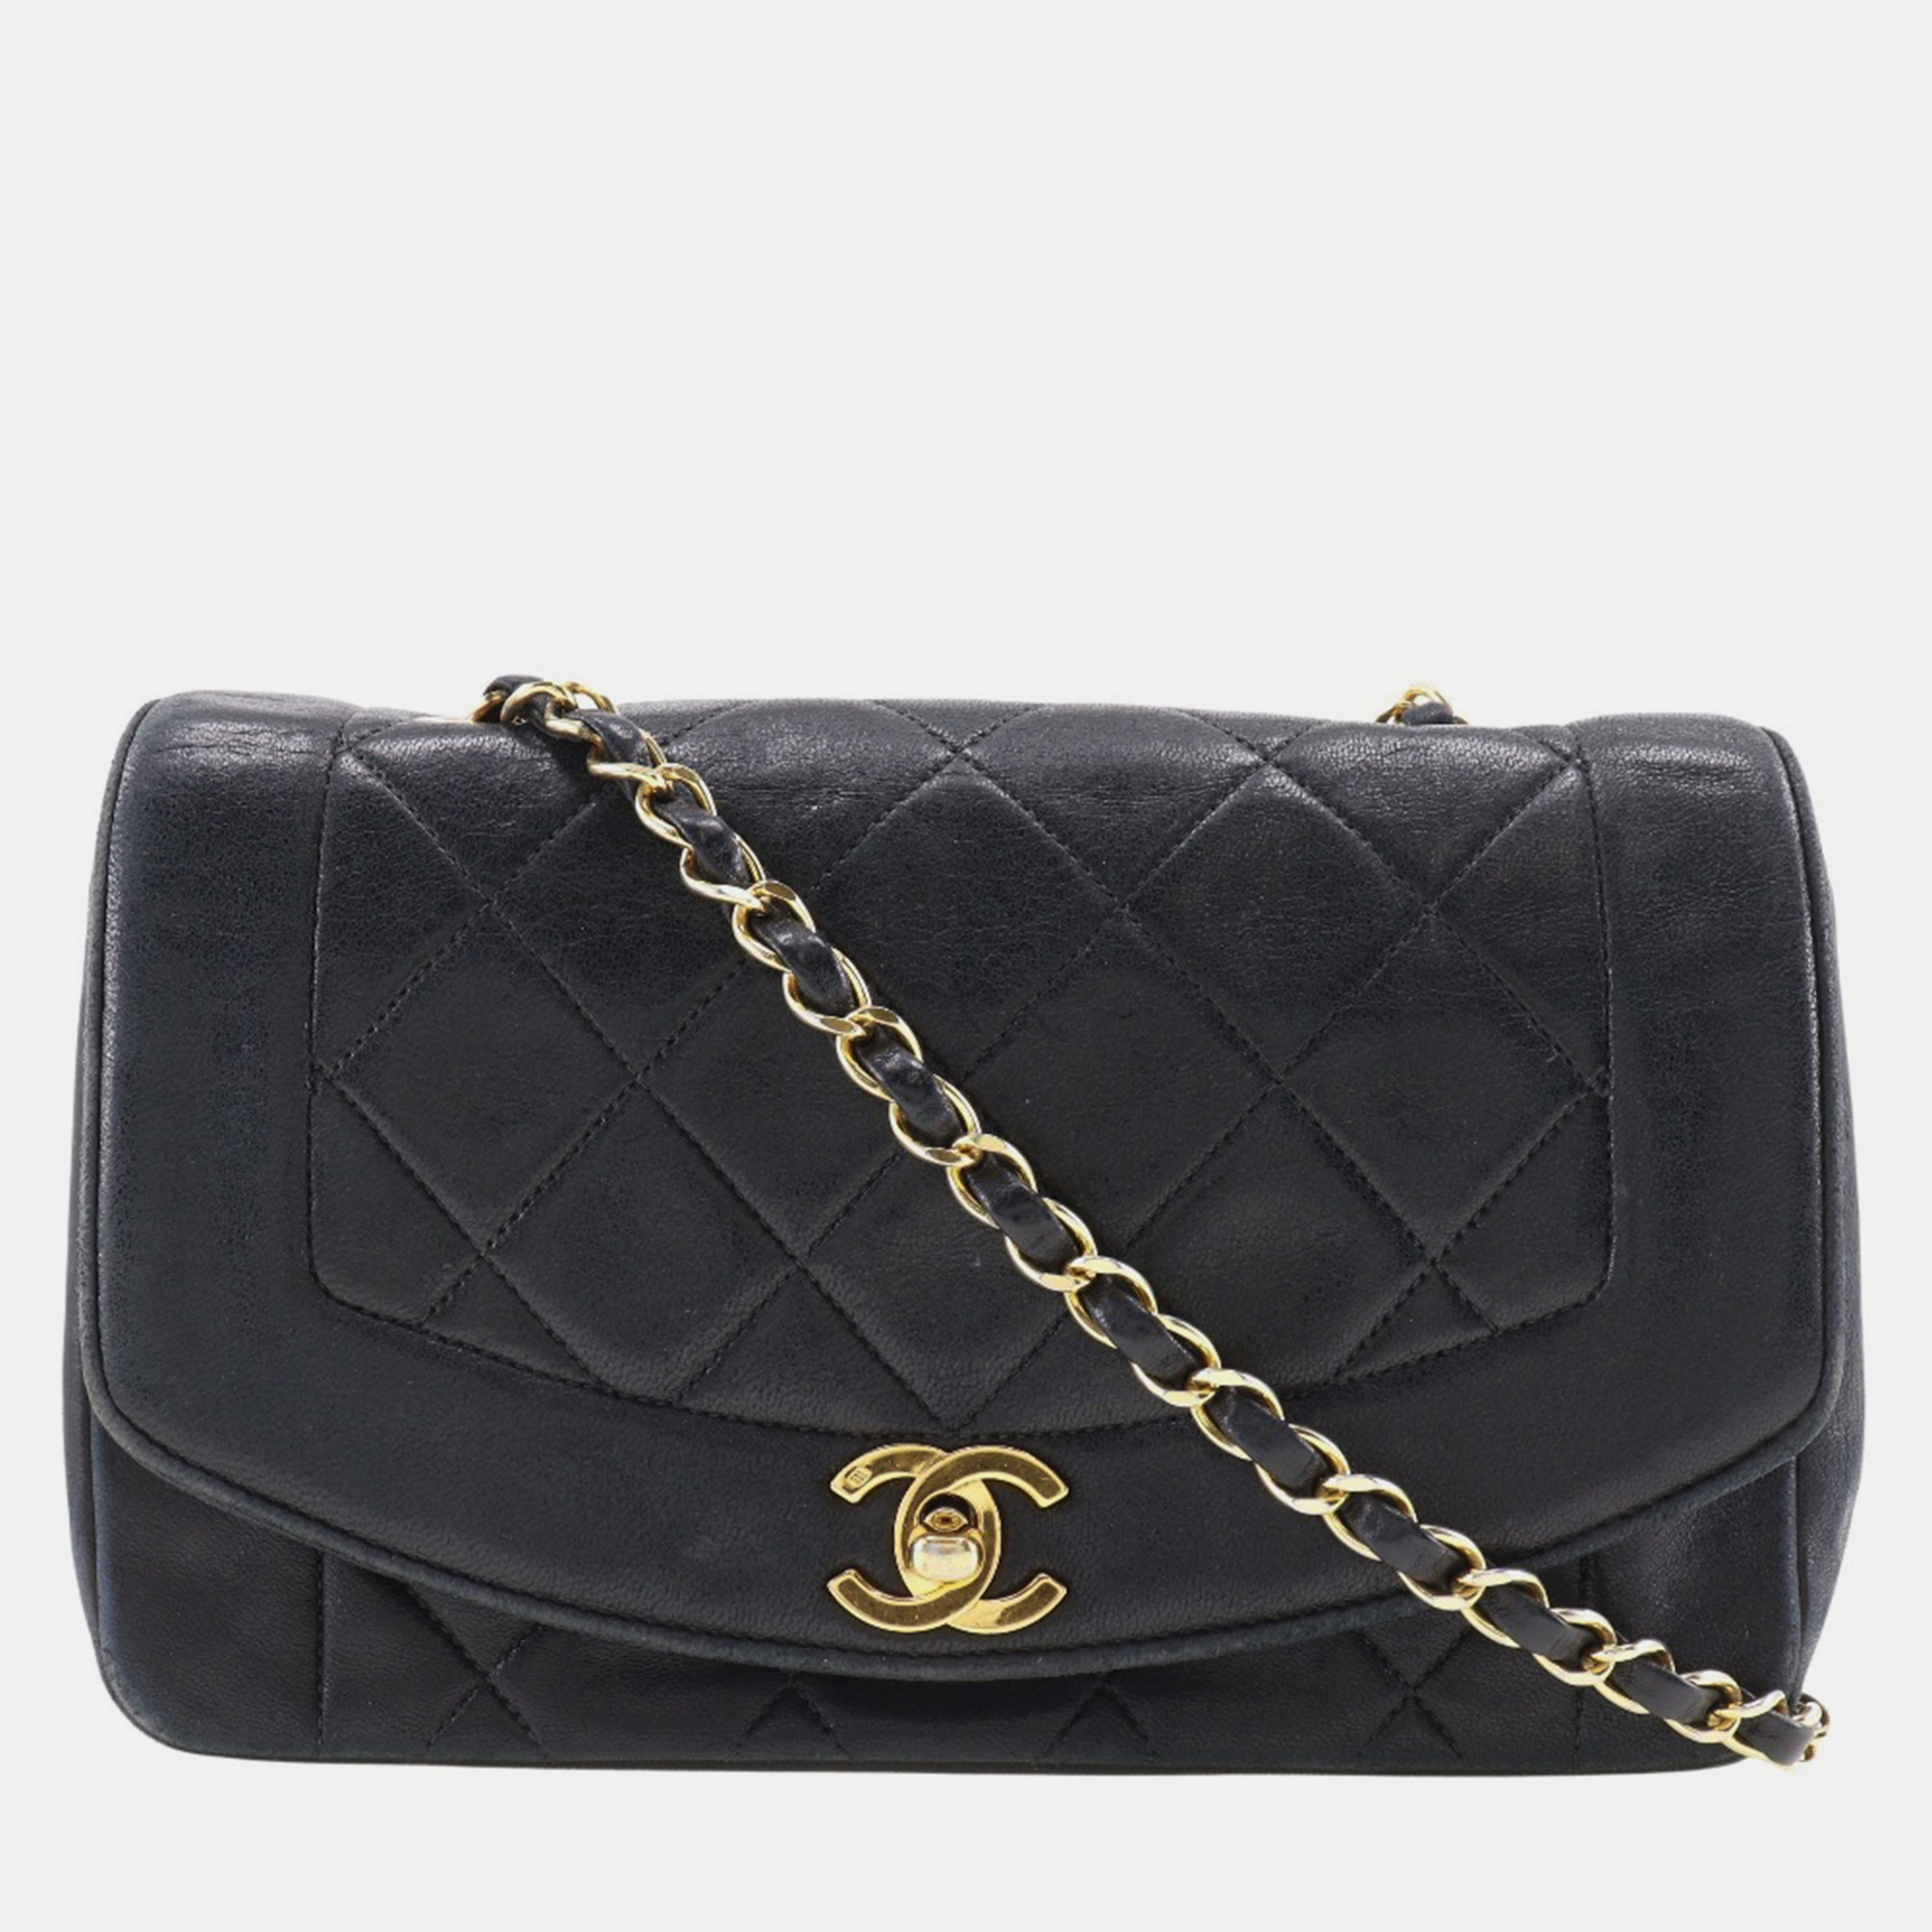 Chanel black leather diana flap shoulder bag